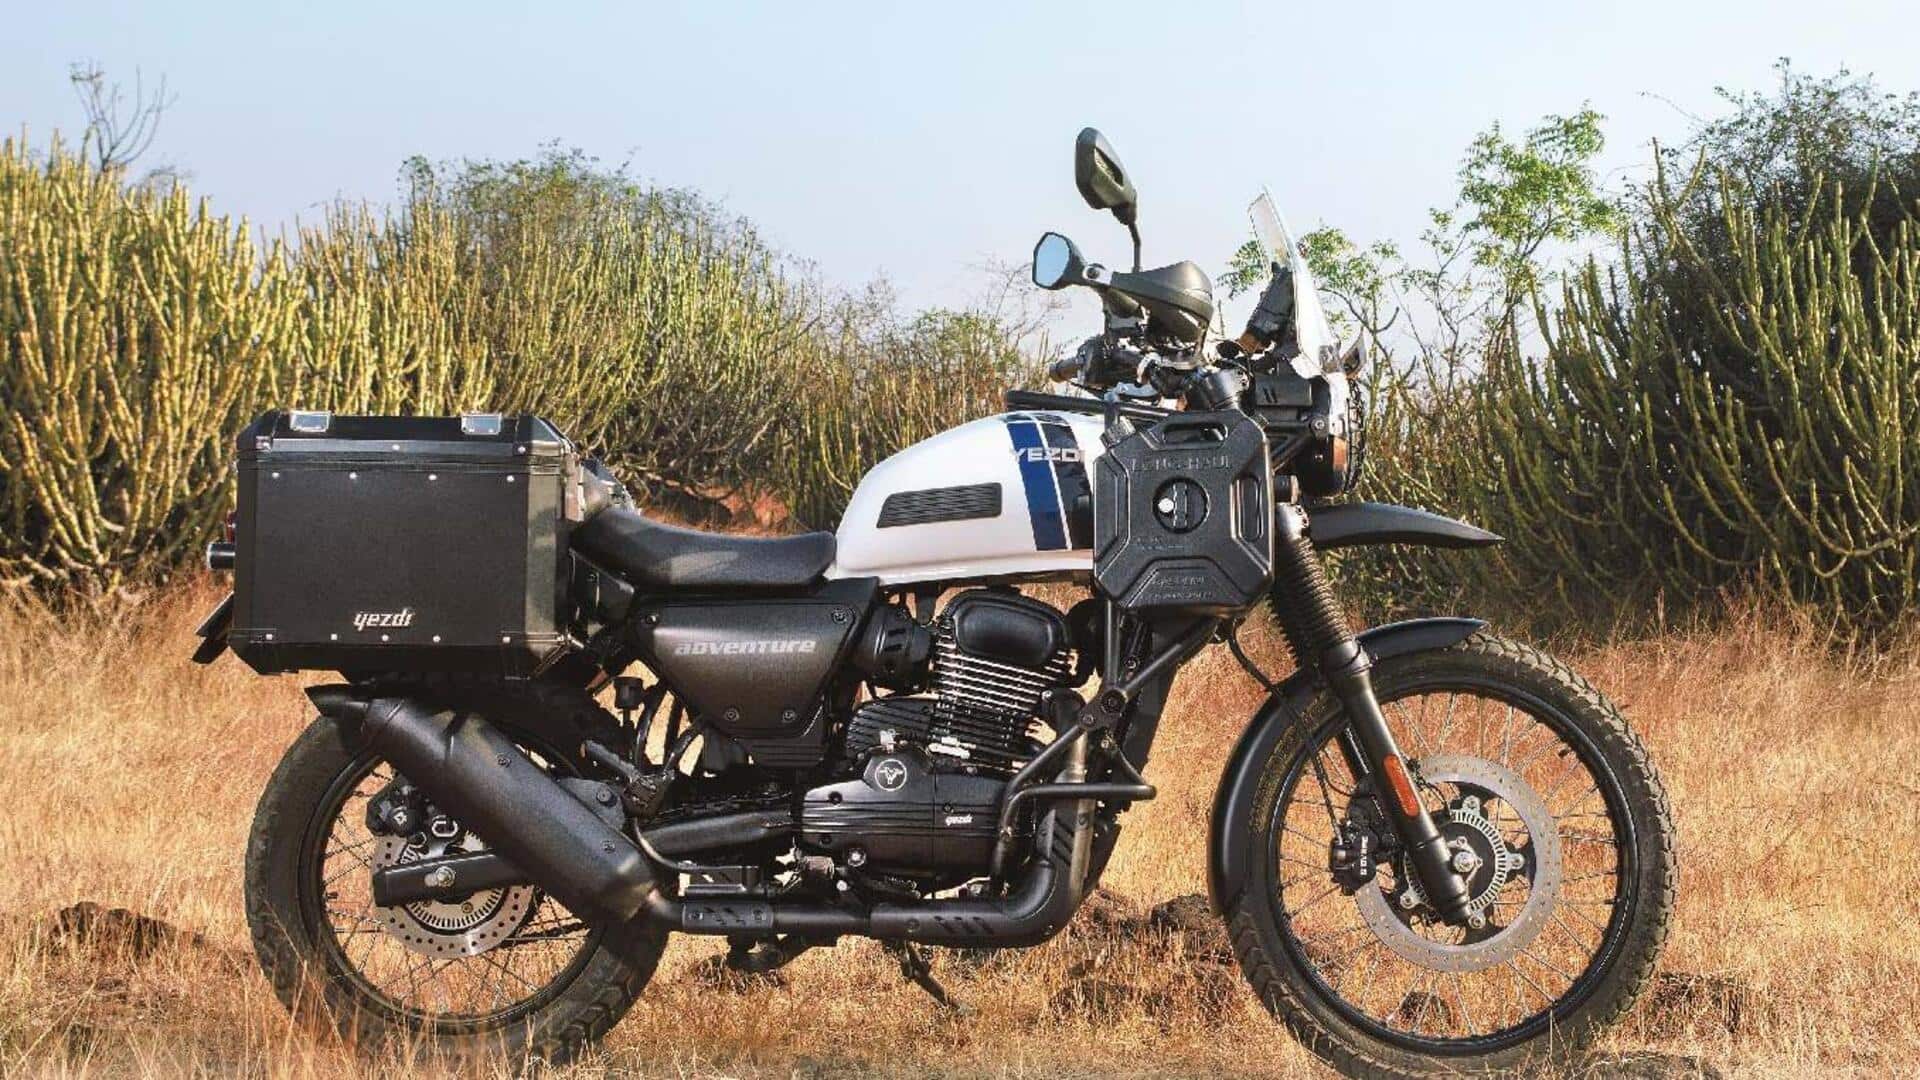 येज्दी एडवेंचर बाइक पर मिल रहा खास ऑफर, 17,000 रुपये का होगा फायदा 